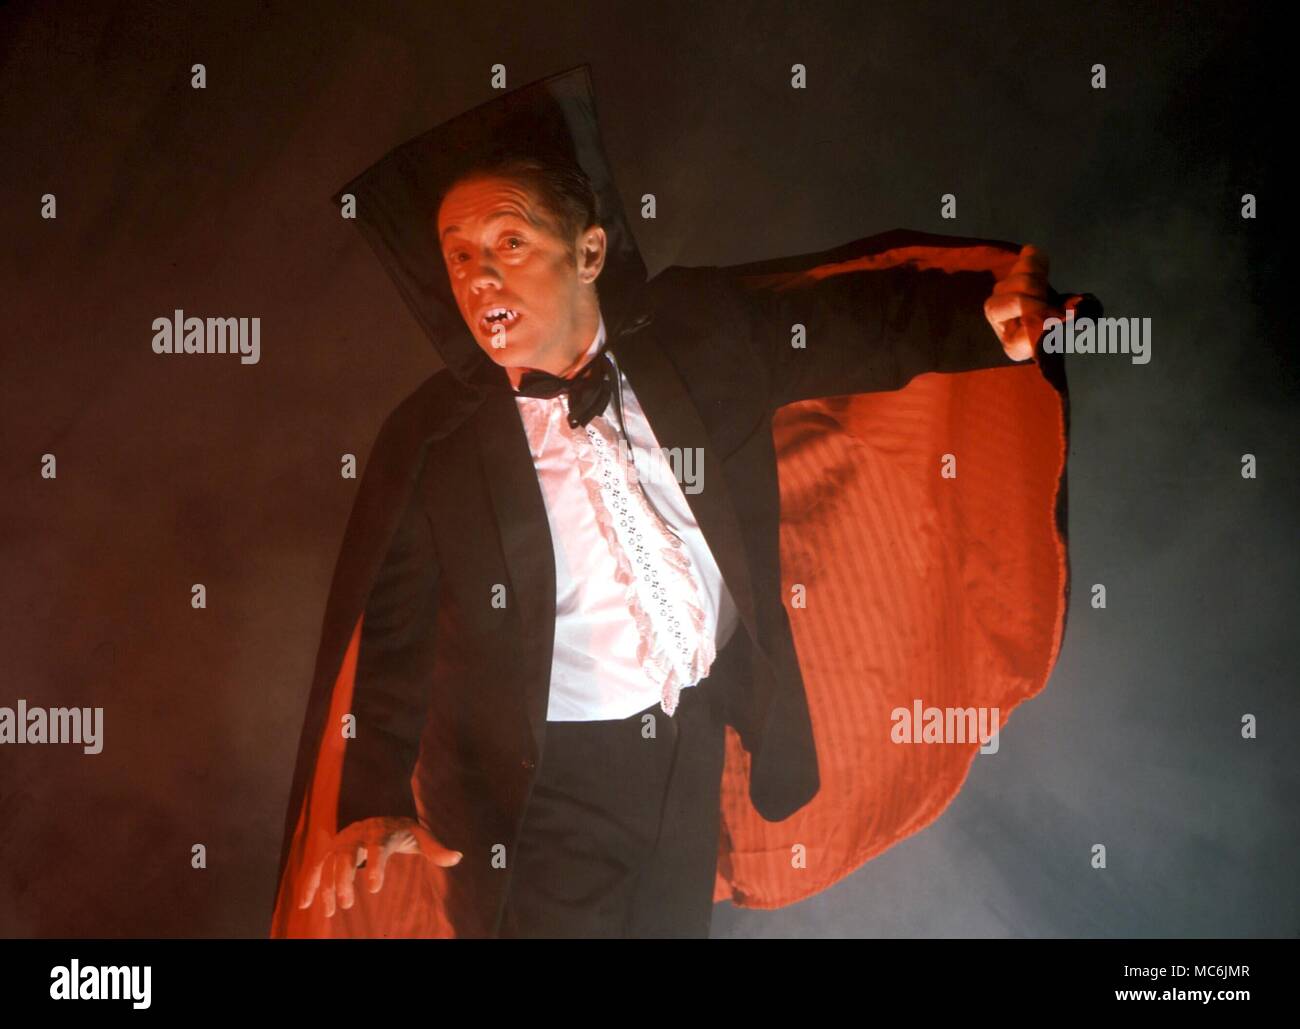 DRACULA - Le Comte Dracula apparaissant à travers le brouillard dans son manteau doublé de rouge Banque D'Images